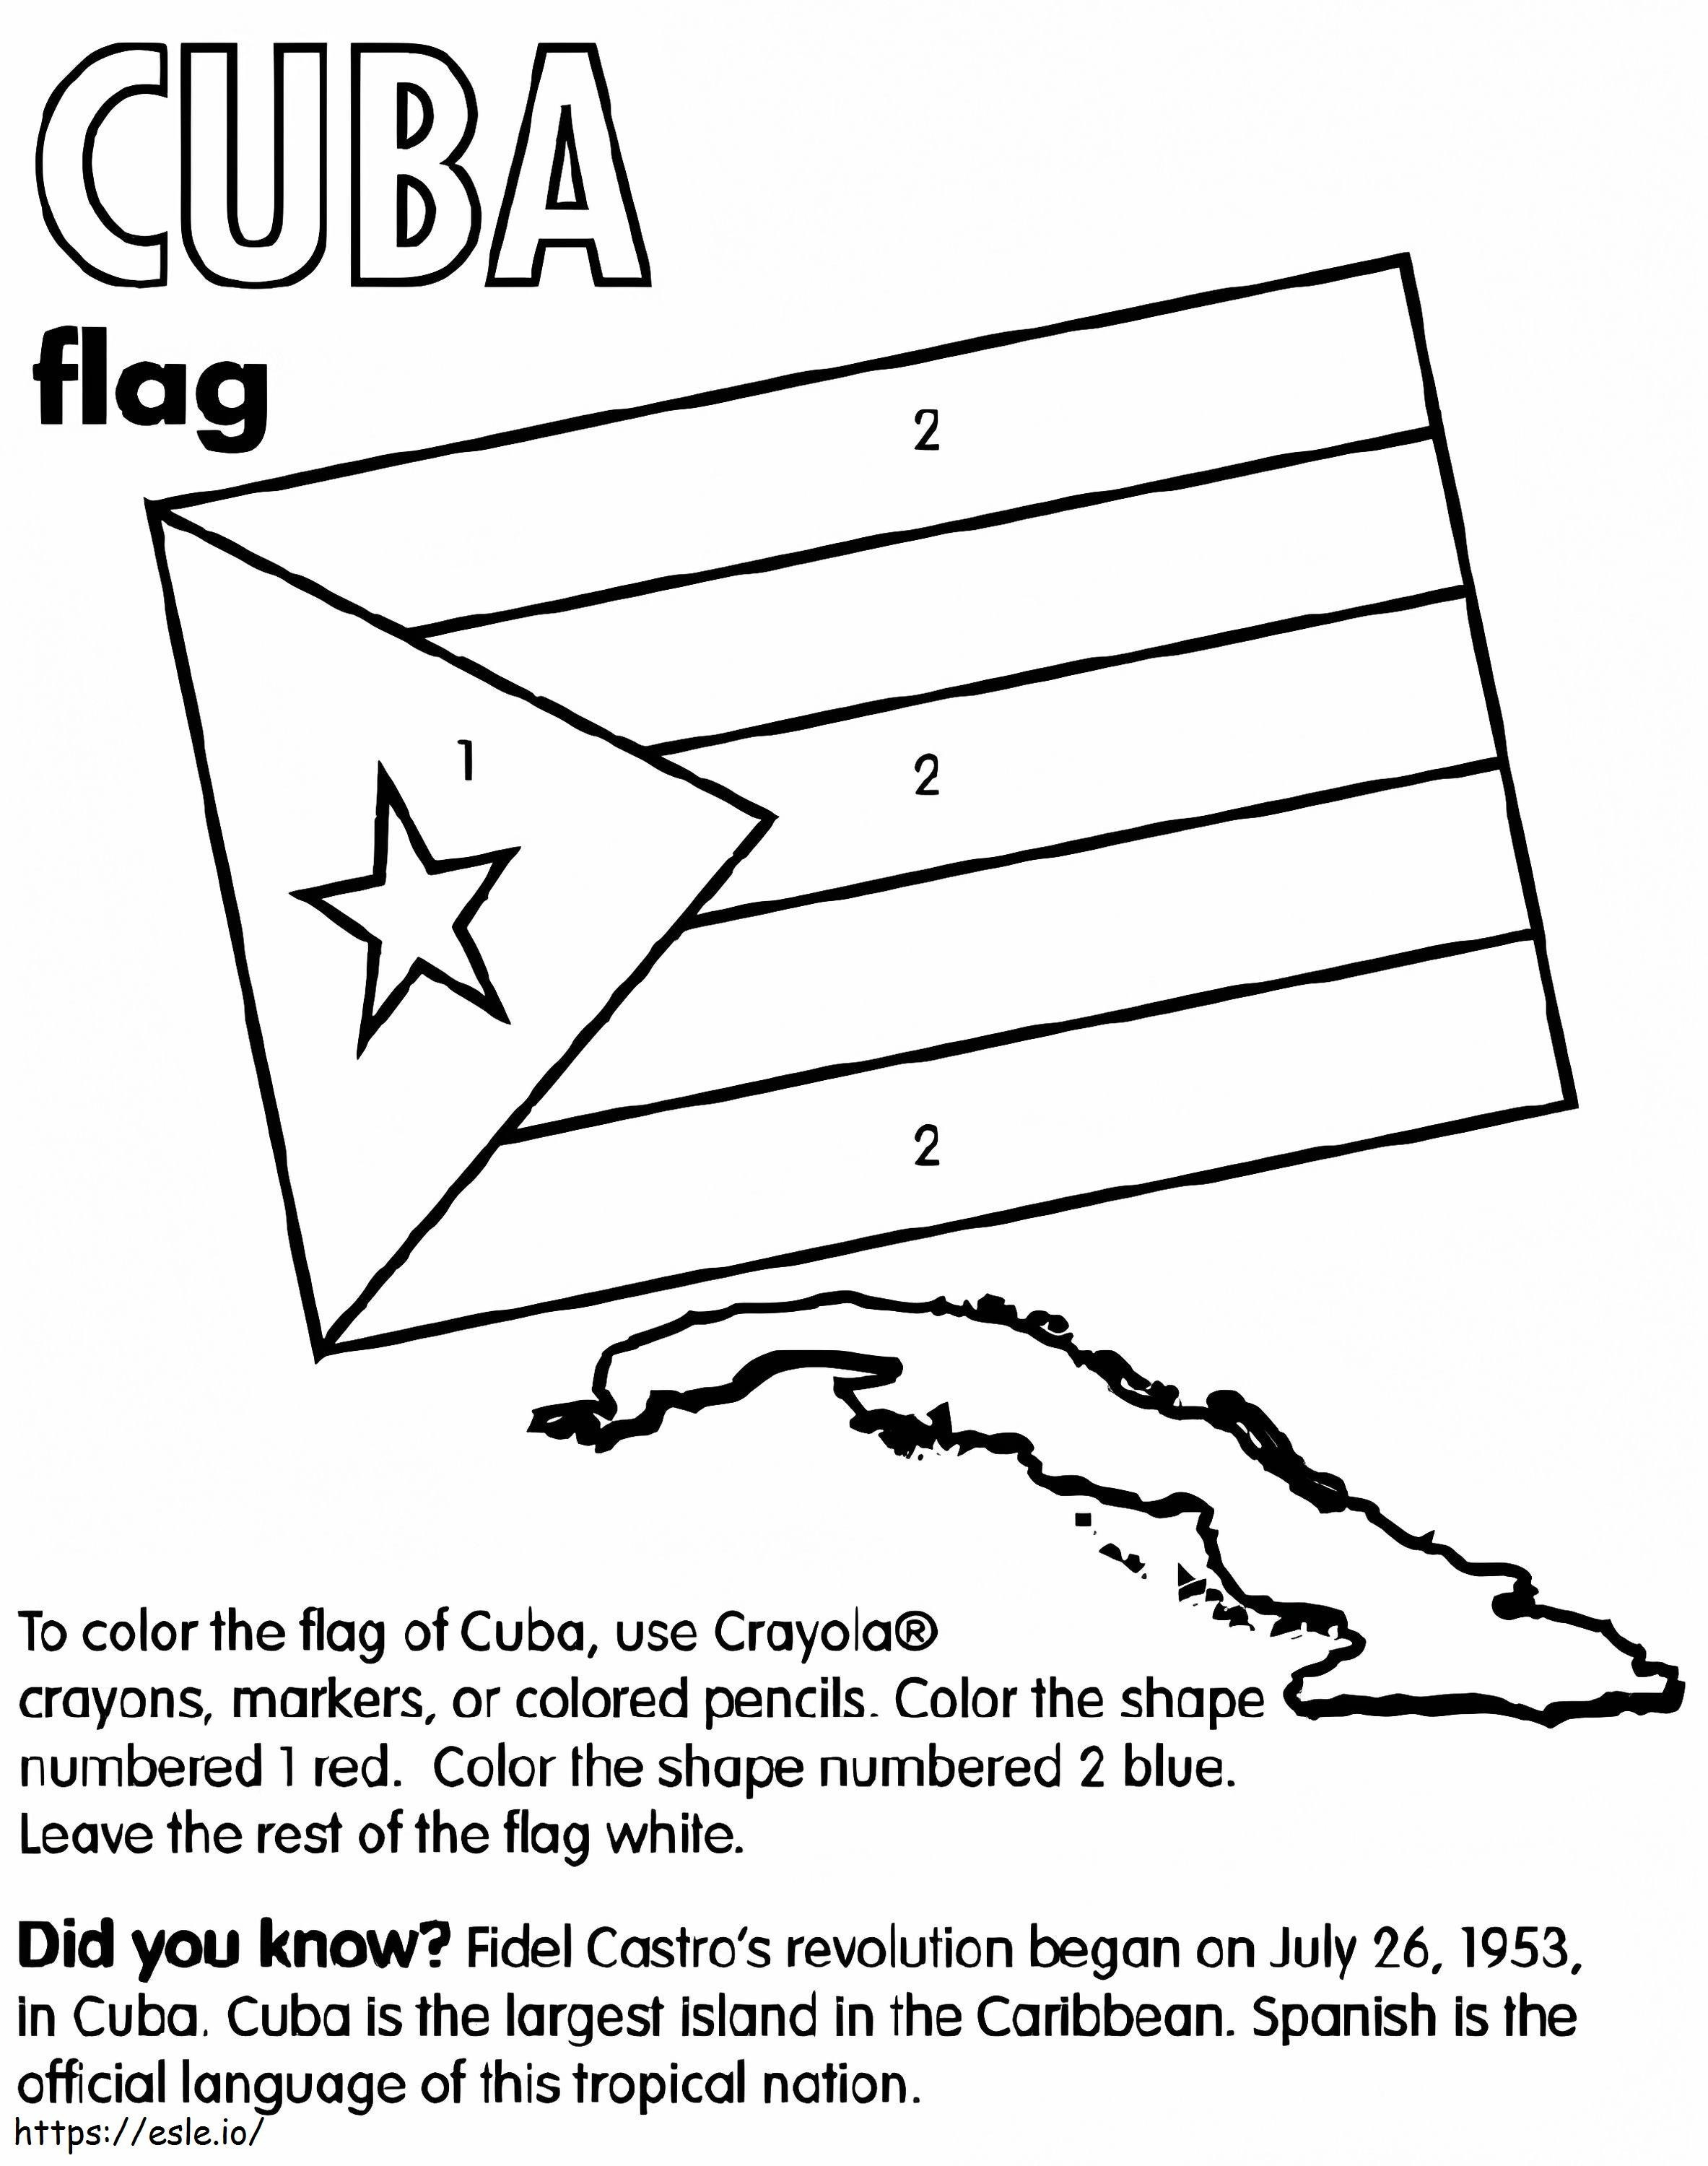 キューバの地図と国旗 ぬりえ - 塗り絵